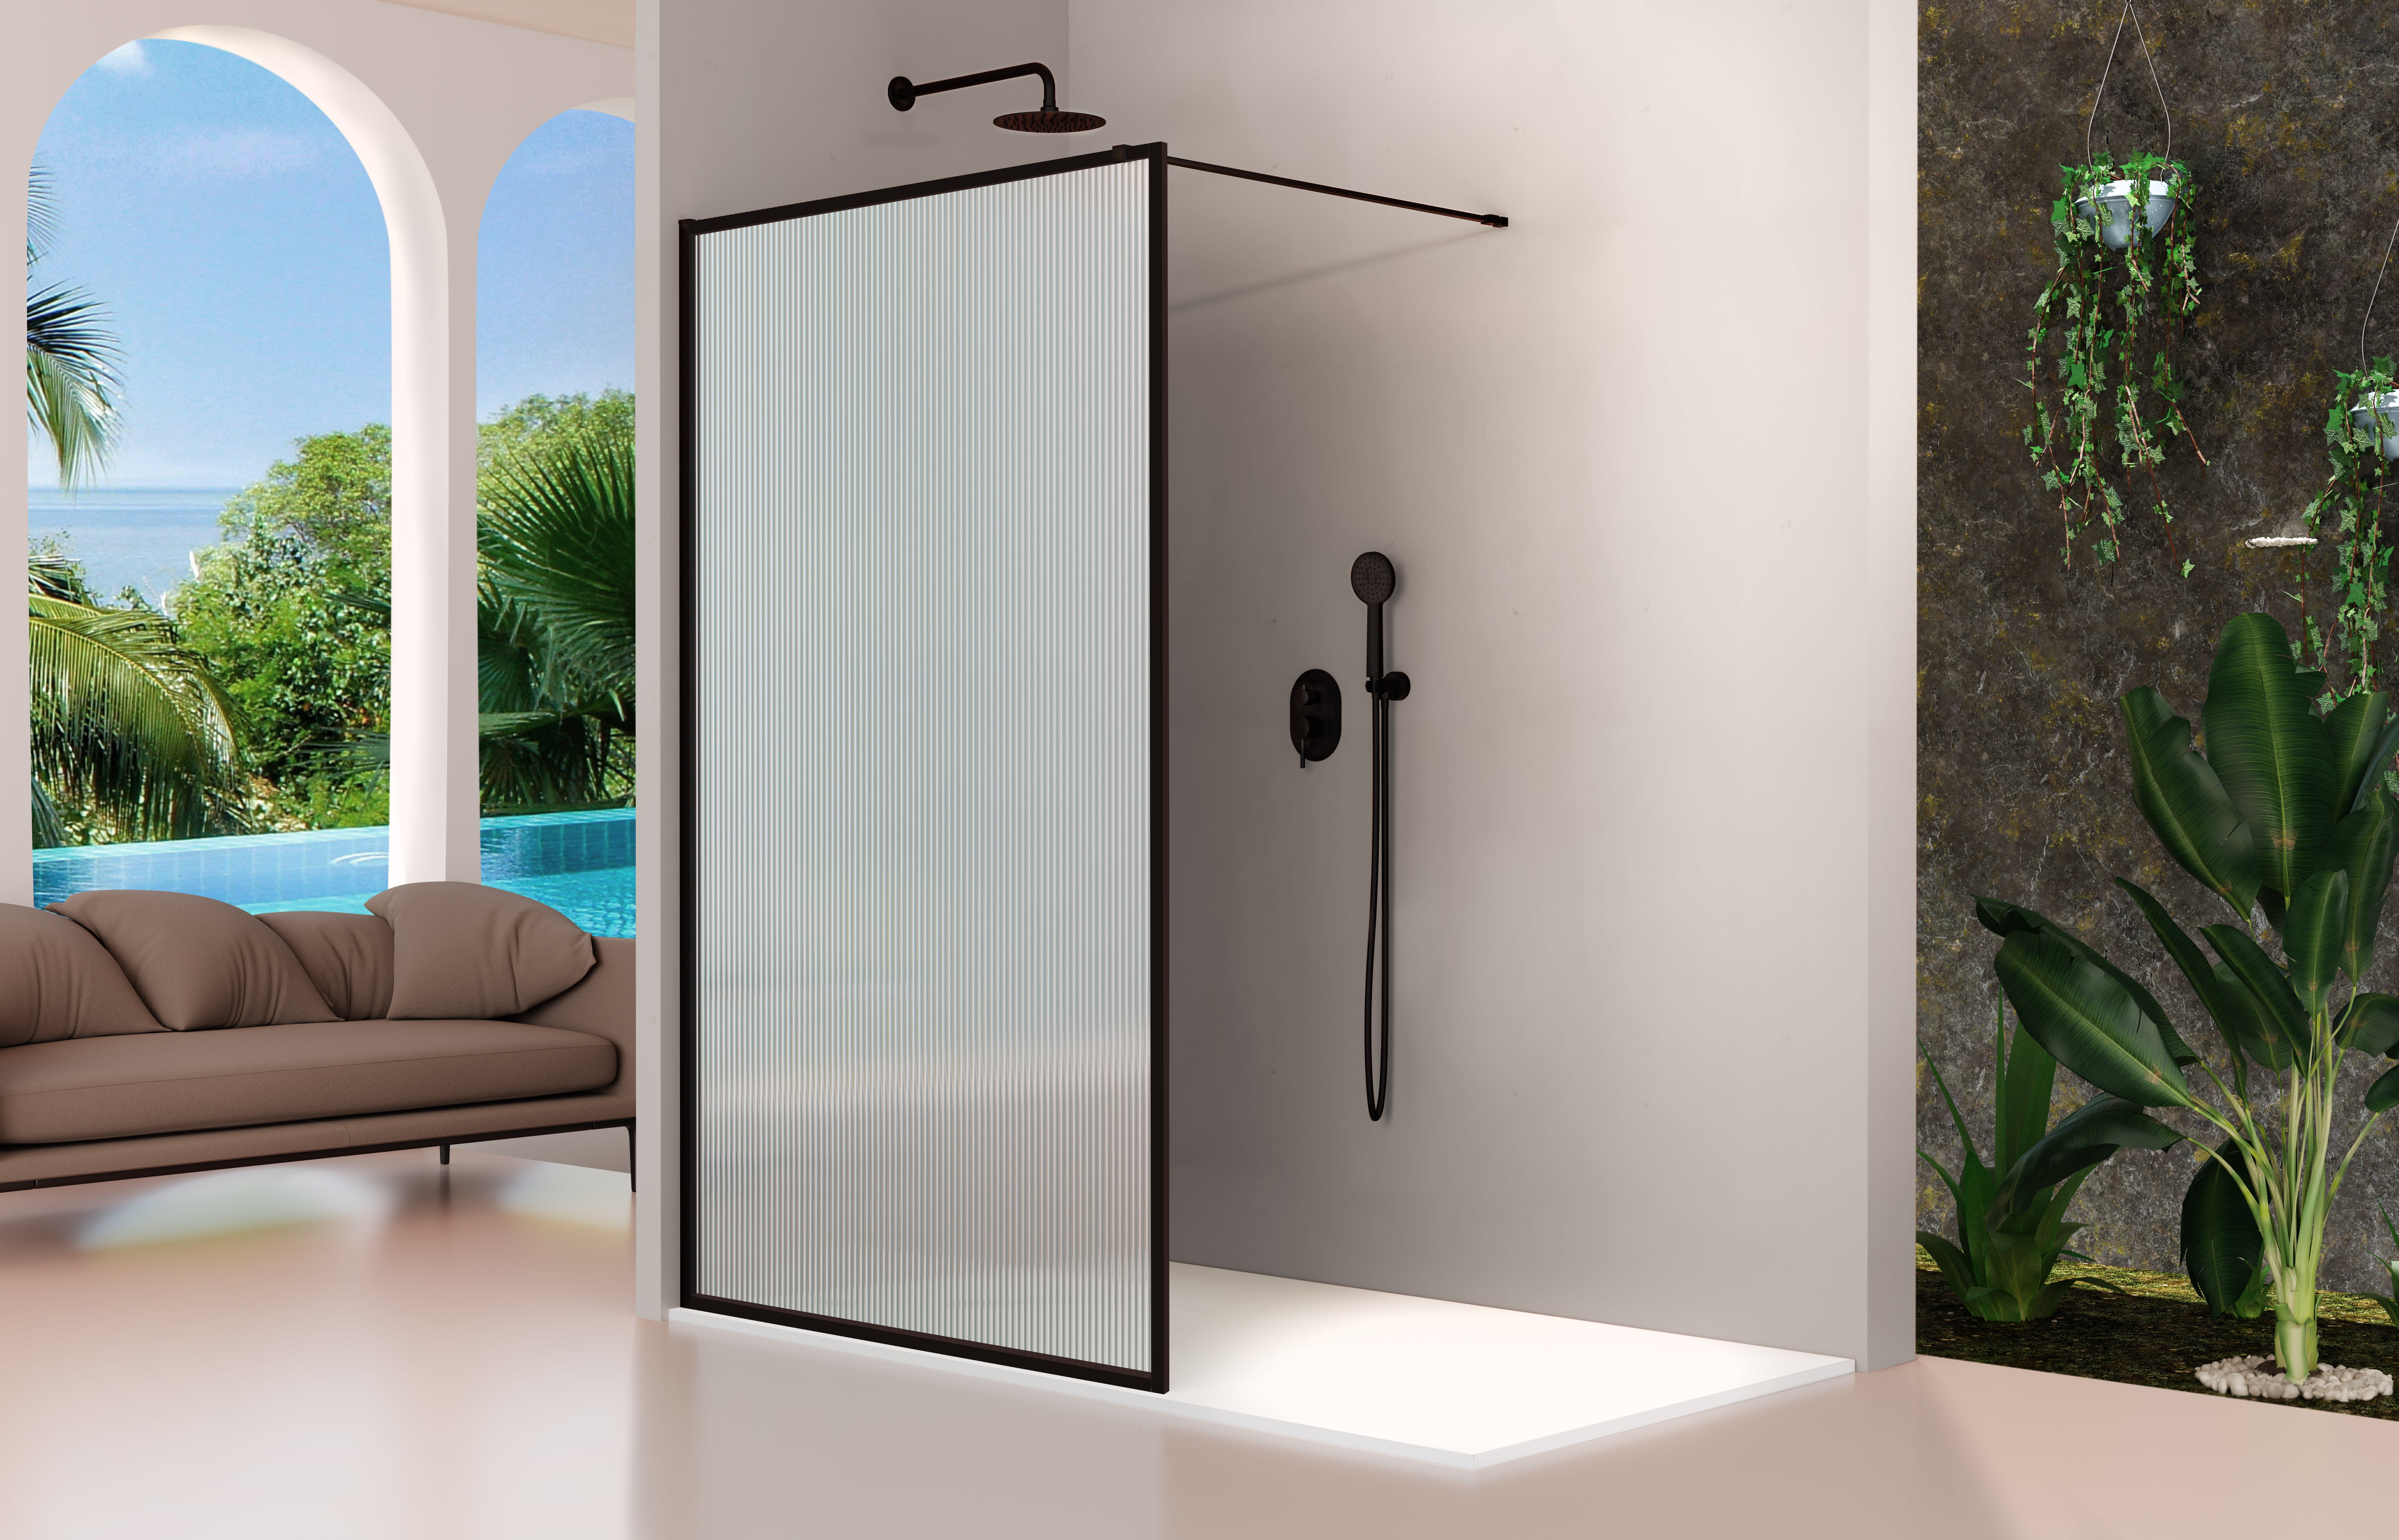 ➤ Mampara de ducha fija más abatible ➤ serie fresh modelo FR423